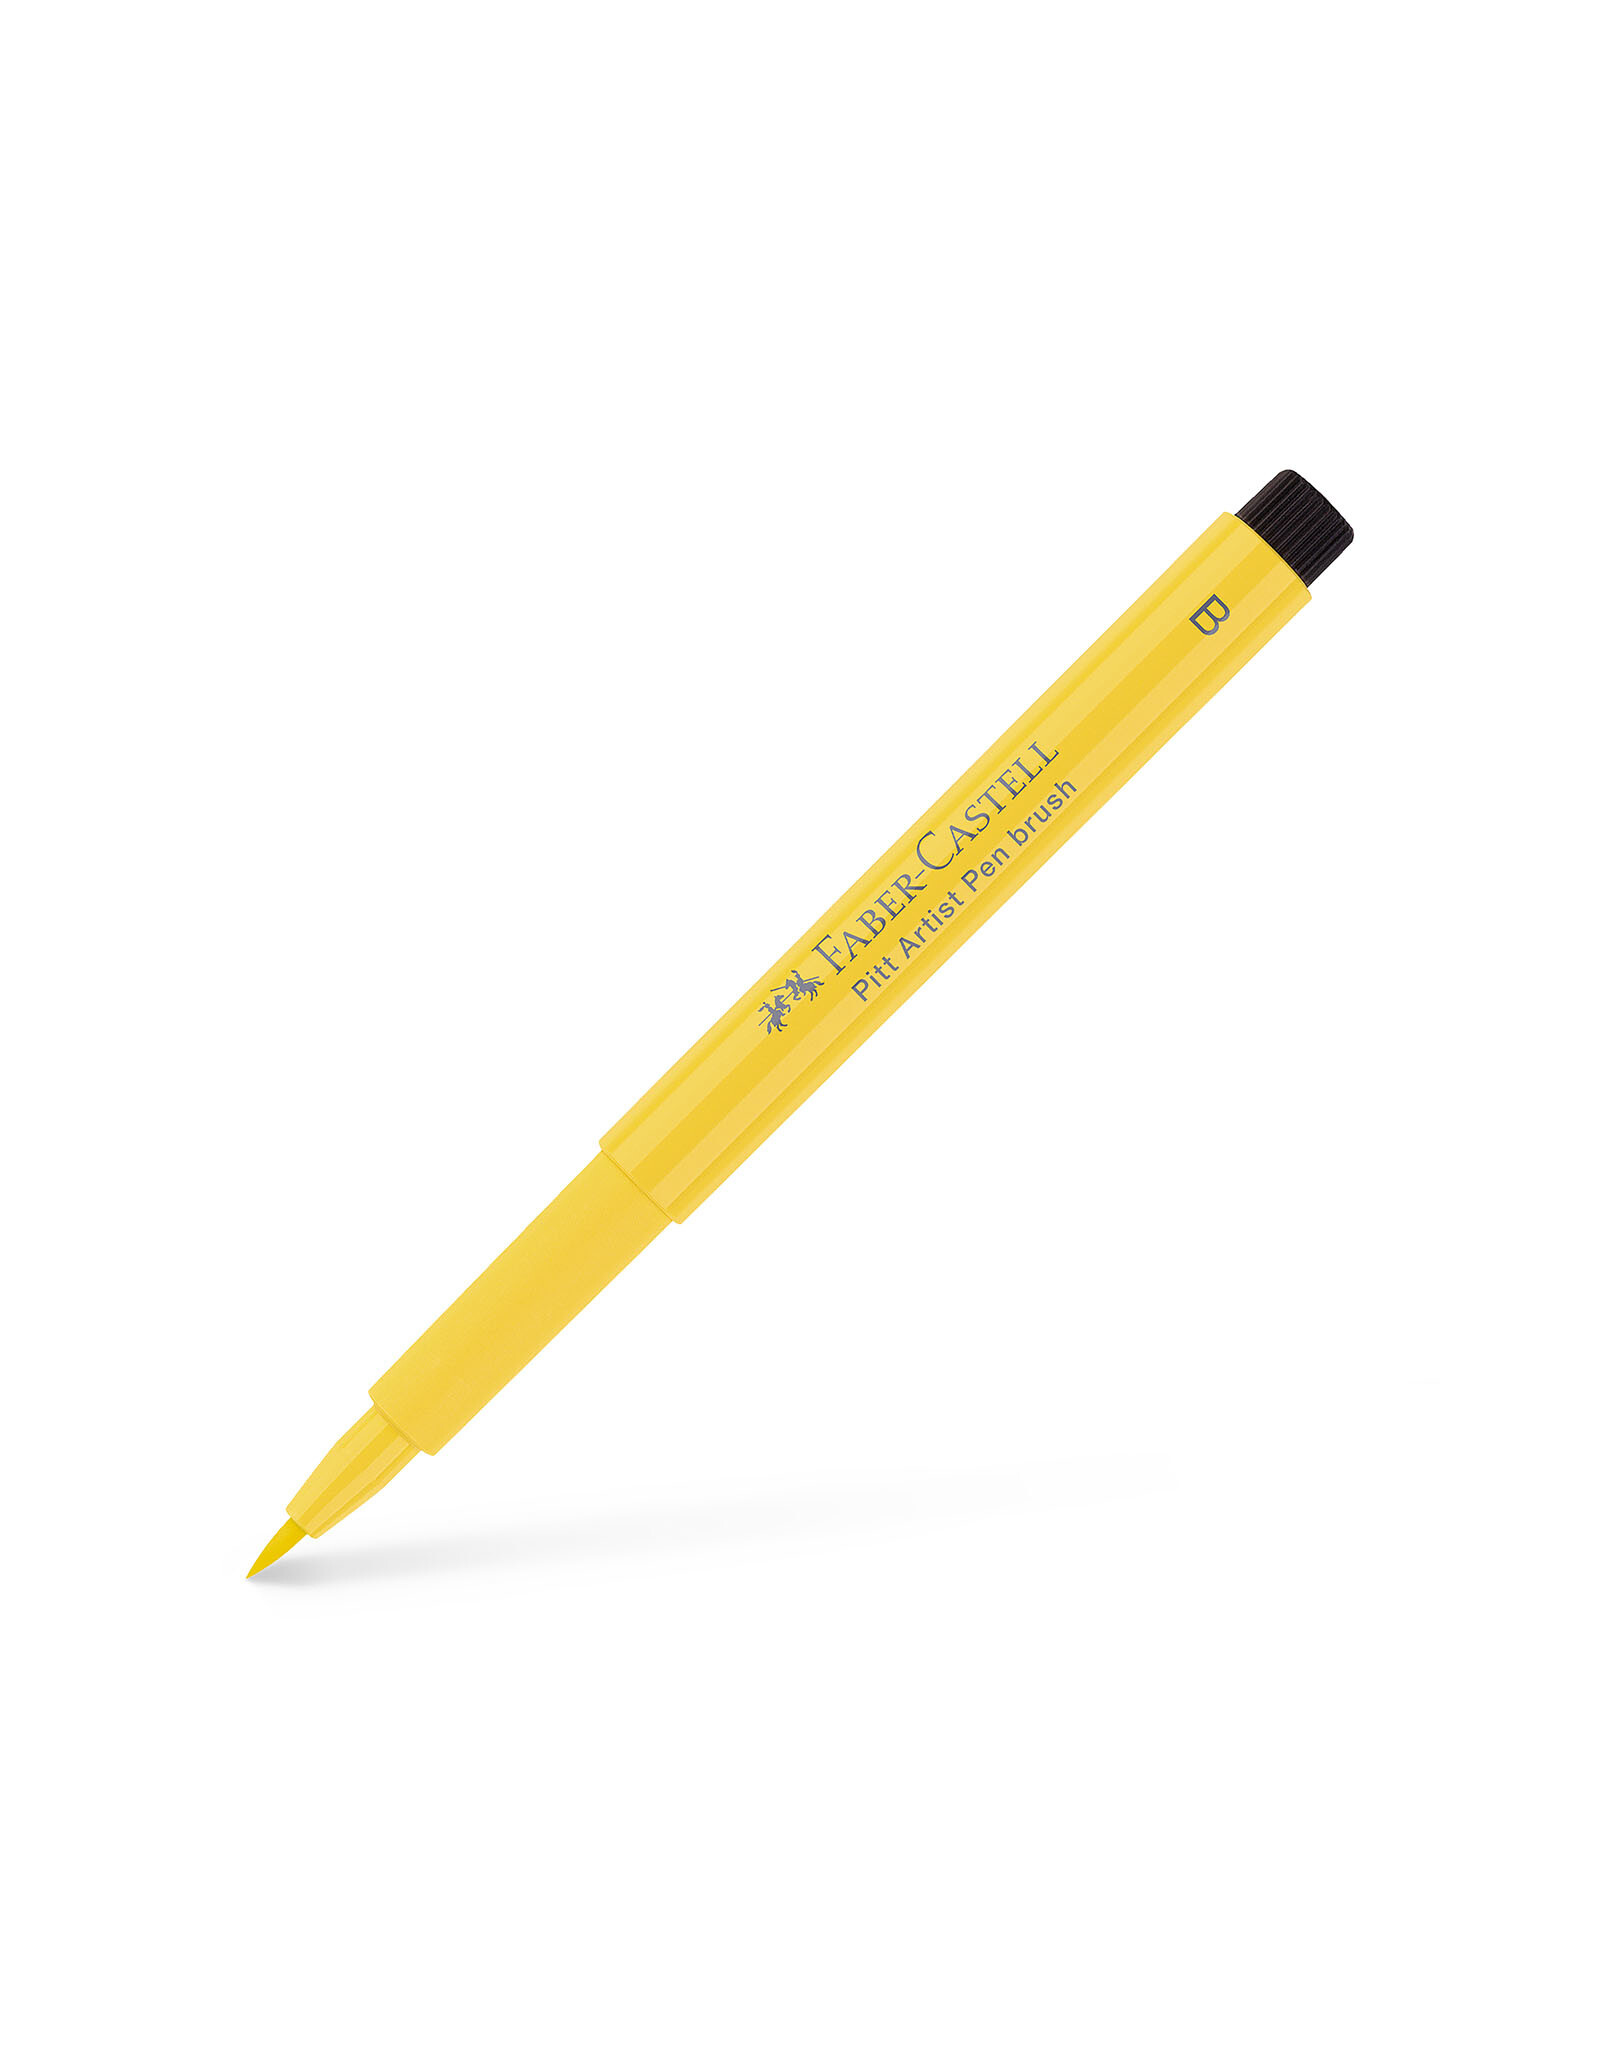 FABER-CASTELL Pitt Artist Pen, Brush, Dark Cadmium Yellow